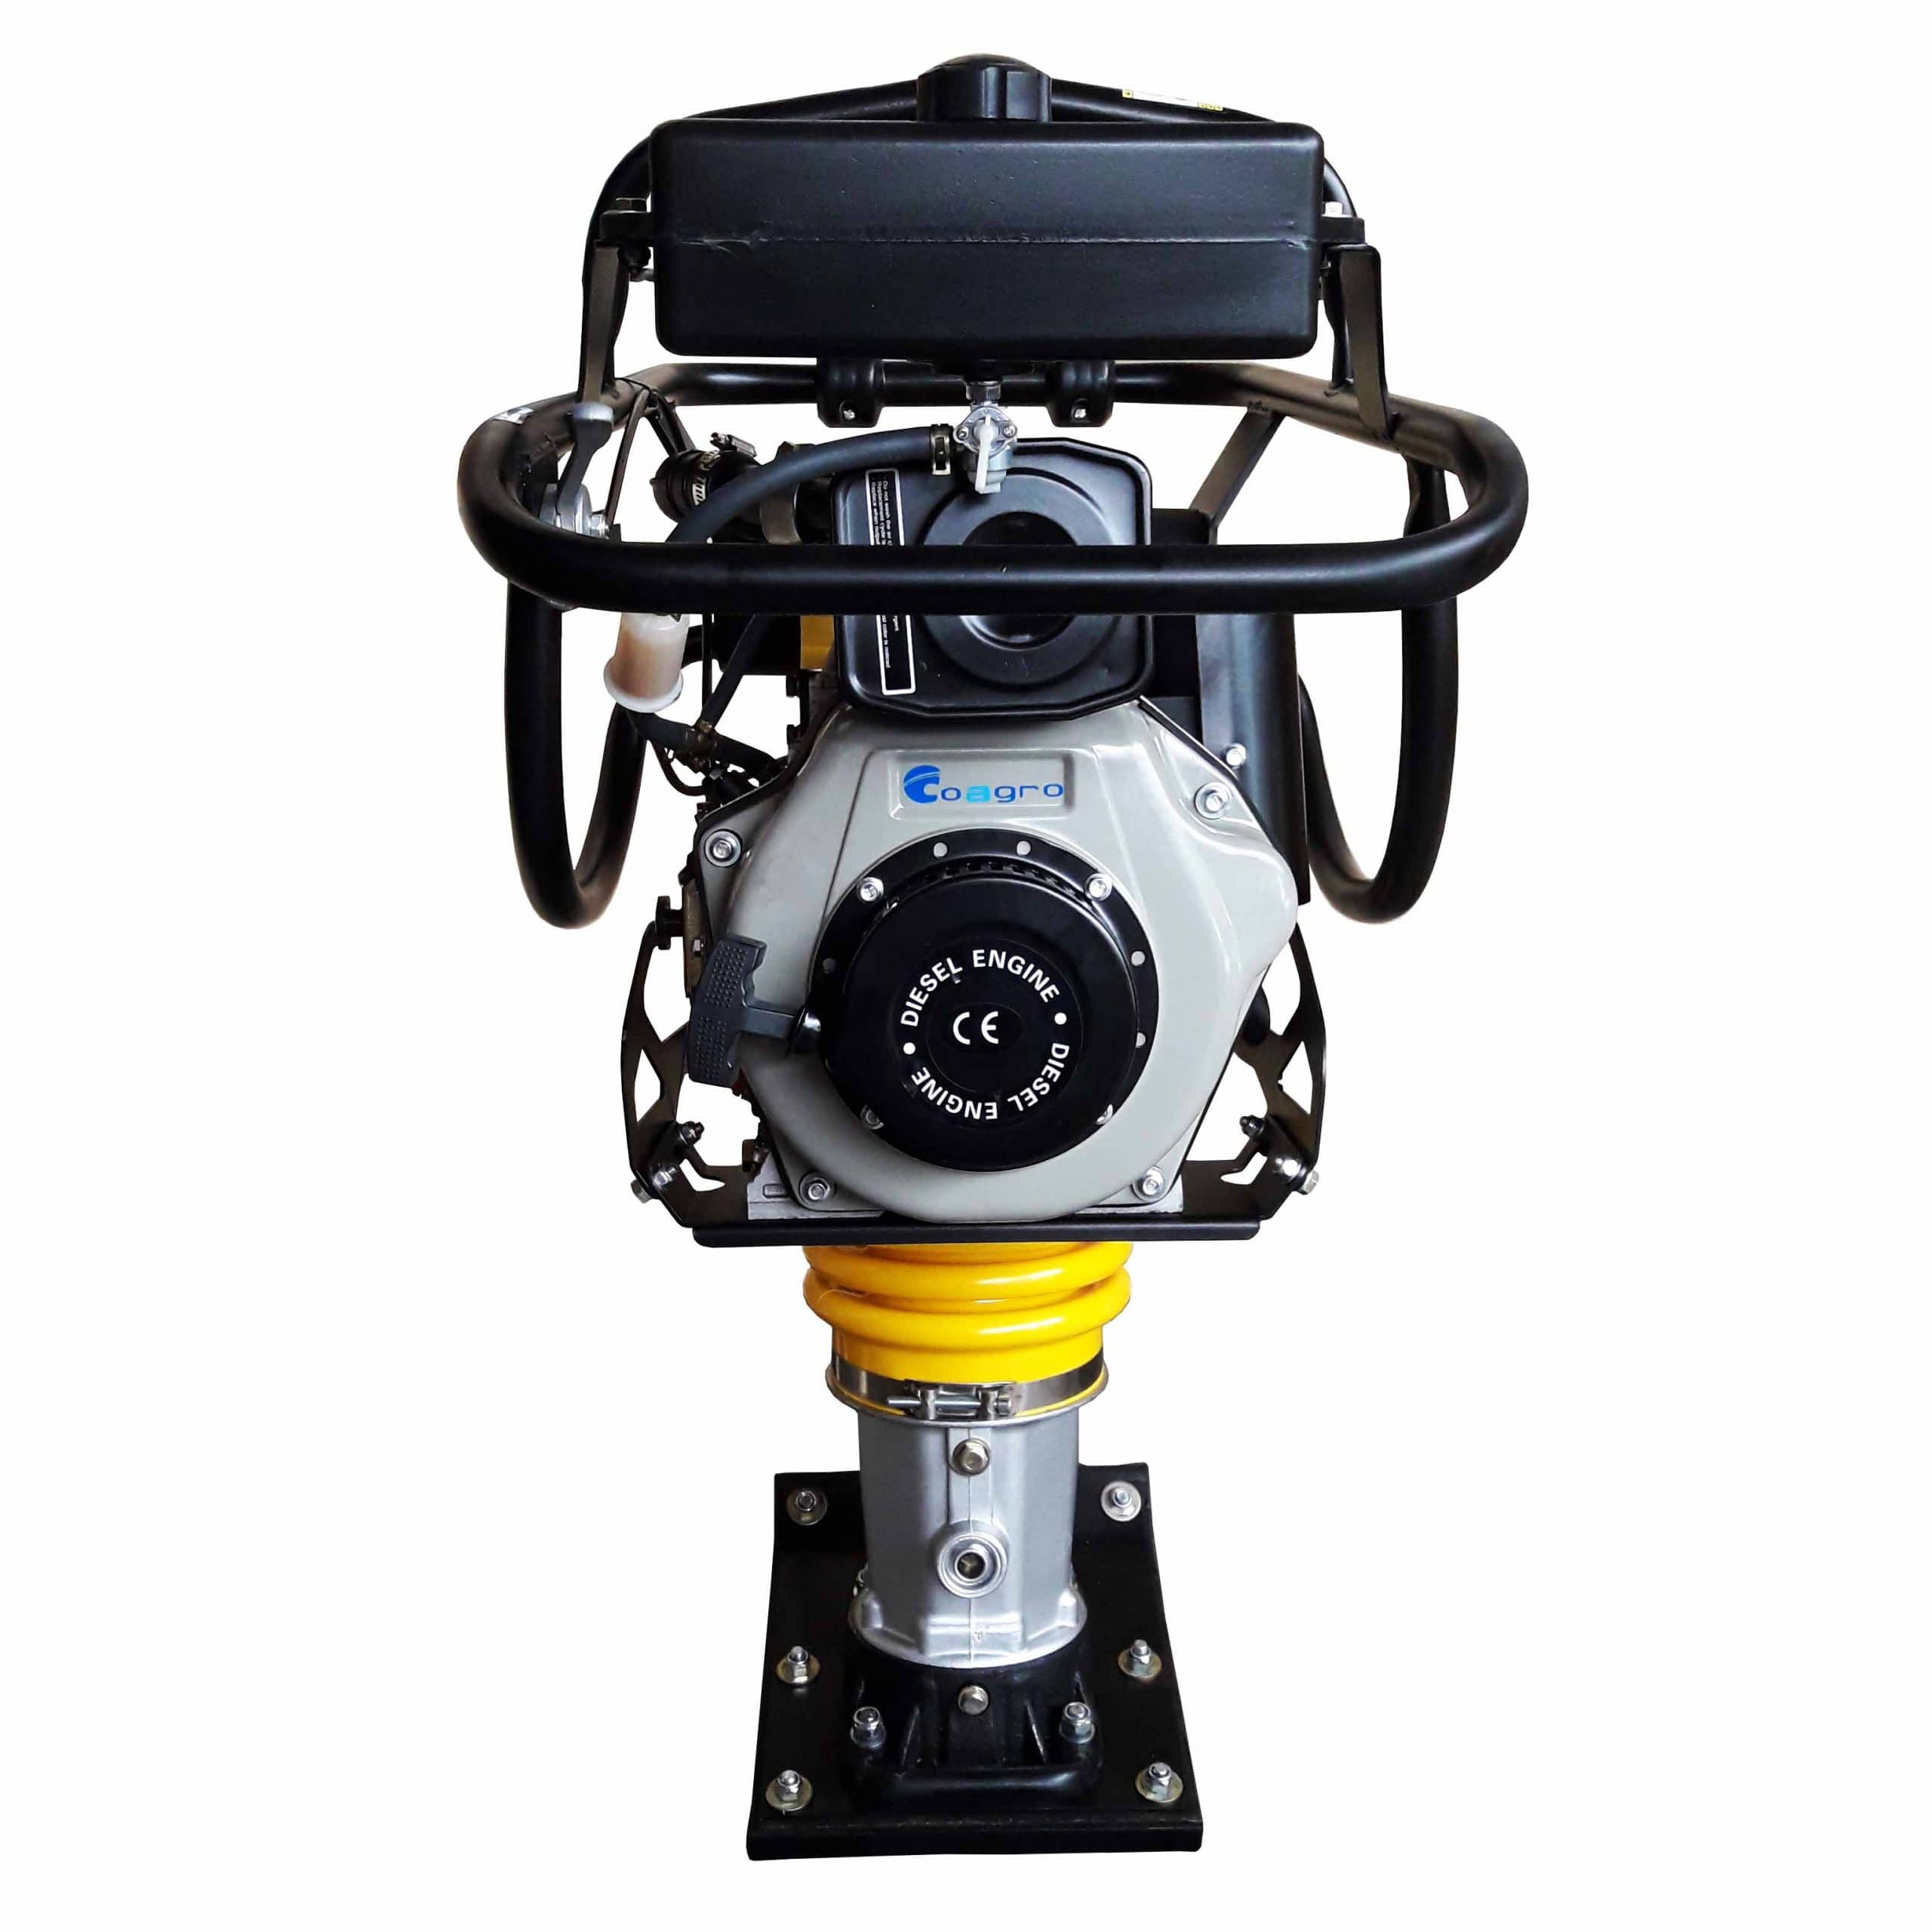 Apisonador Diesel 4HP - Coagro